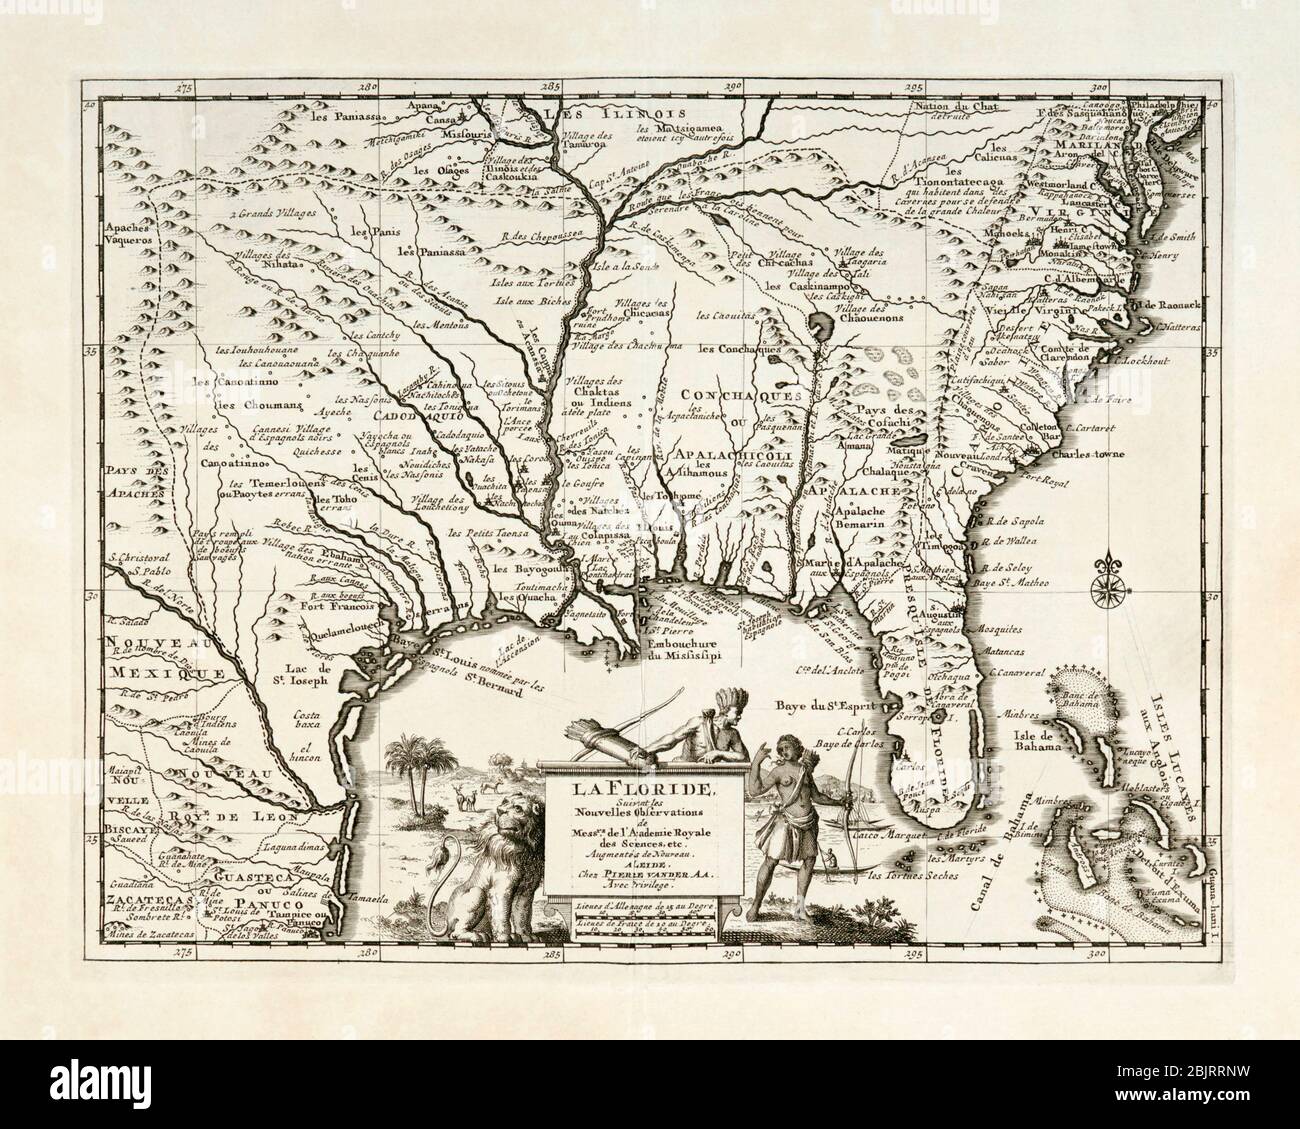 La Floride. Mapa del sudeste de América del Norte, incluyendo Florida, mostrando pueblos nativos americanos y asentamientos franceses, españoles e ingleses. Publicado por Pieter van der AA, Leiden, alrededor de 1713. Foto de stock